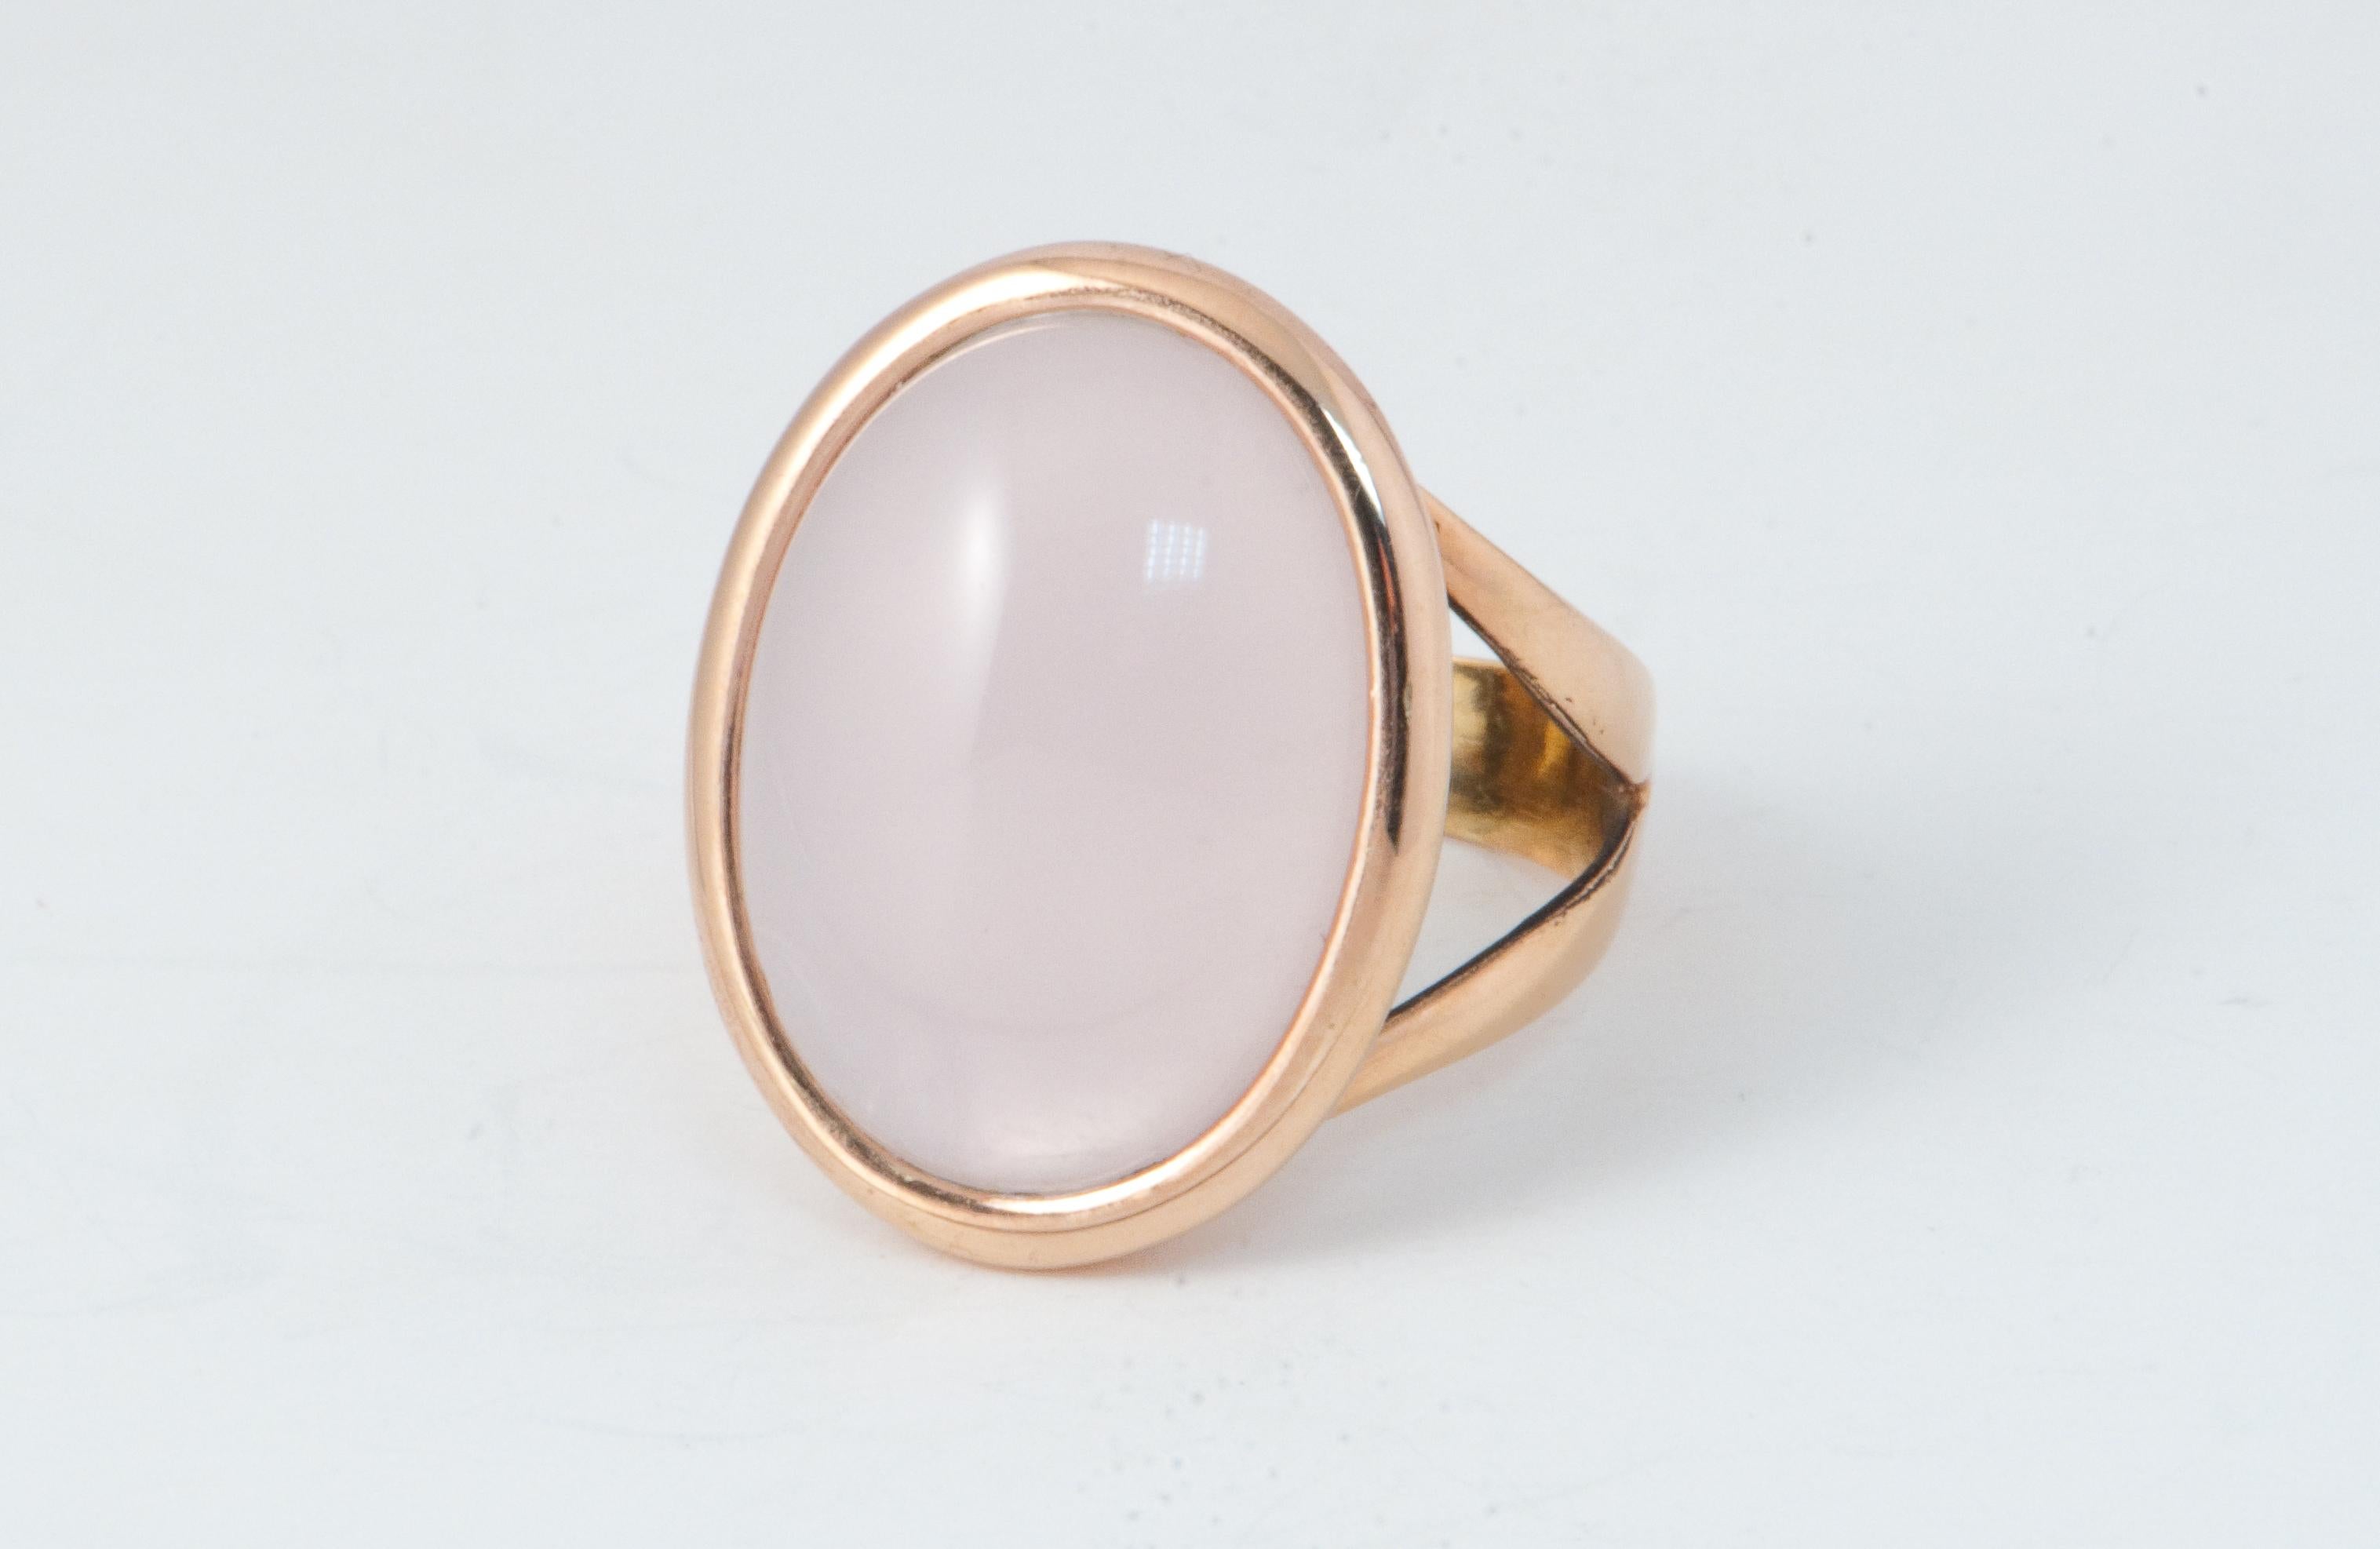  Pink Quartz Nacre Shape Cabochon Ring Pink Gold 18 Karat For Sale 4